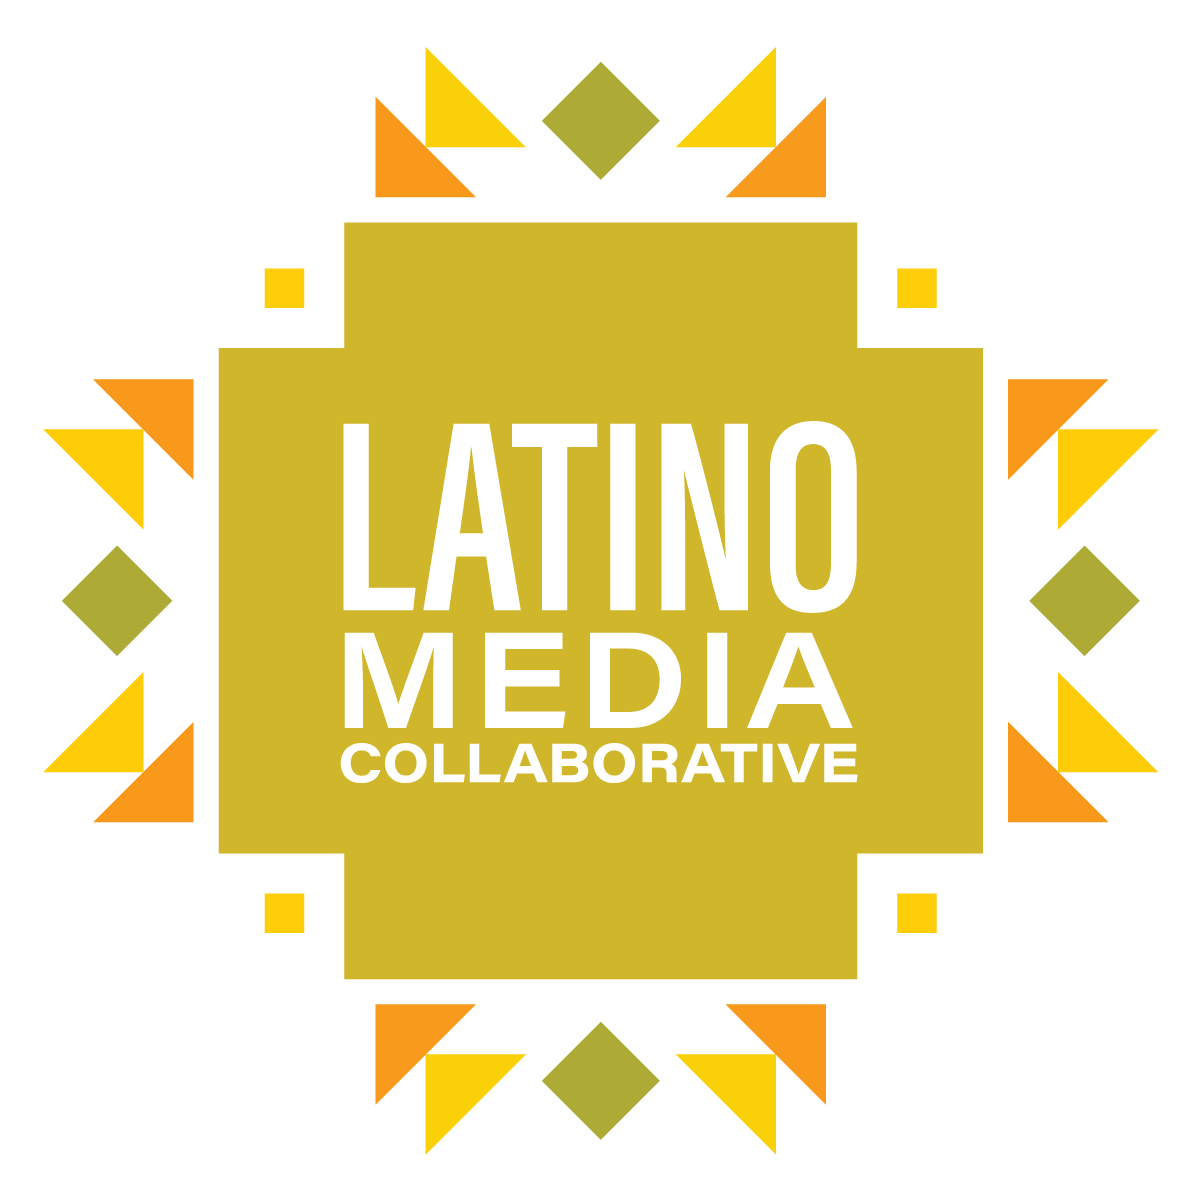 Latino Media Collaborative